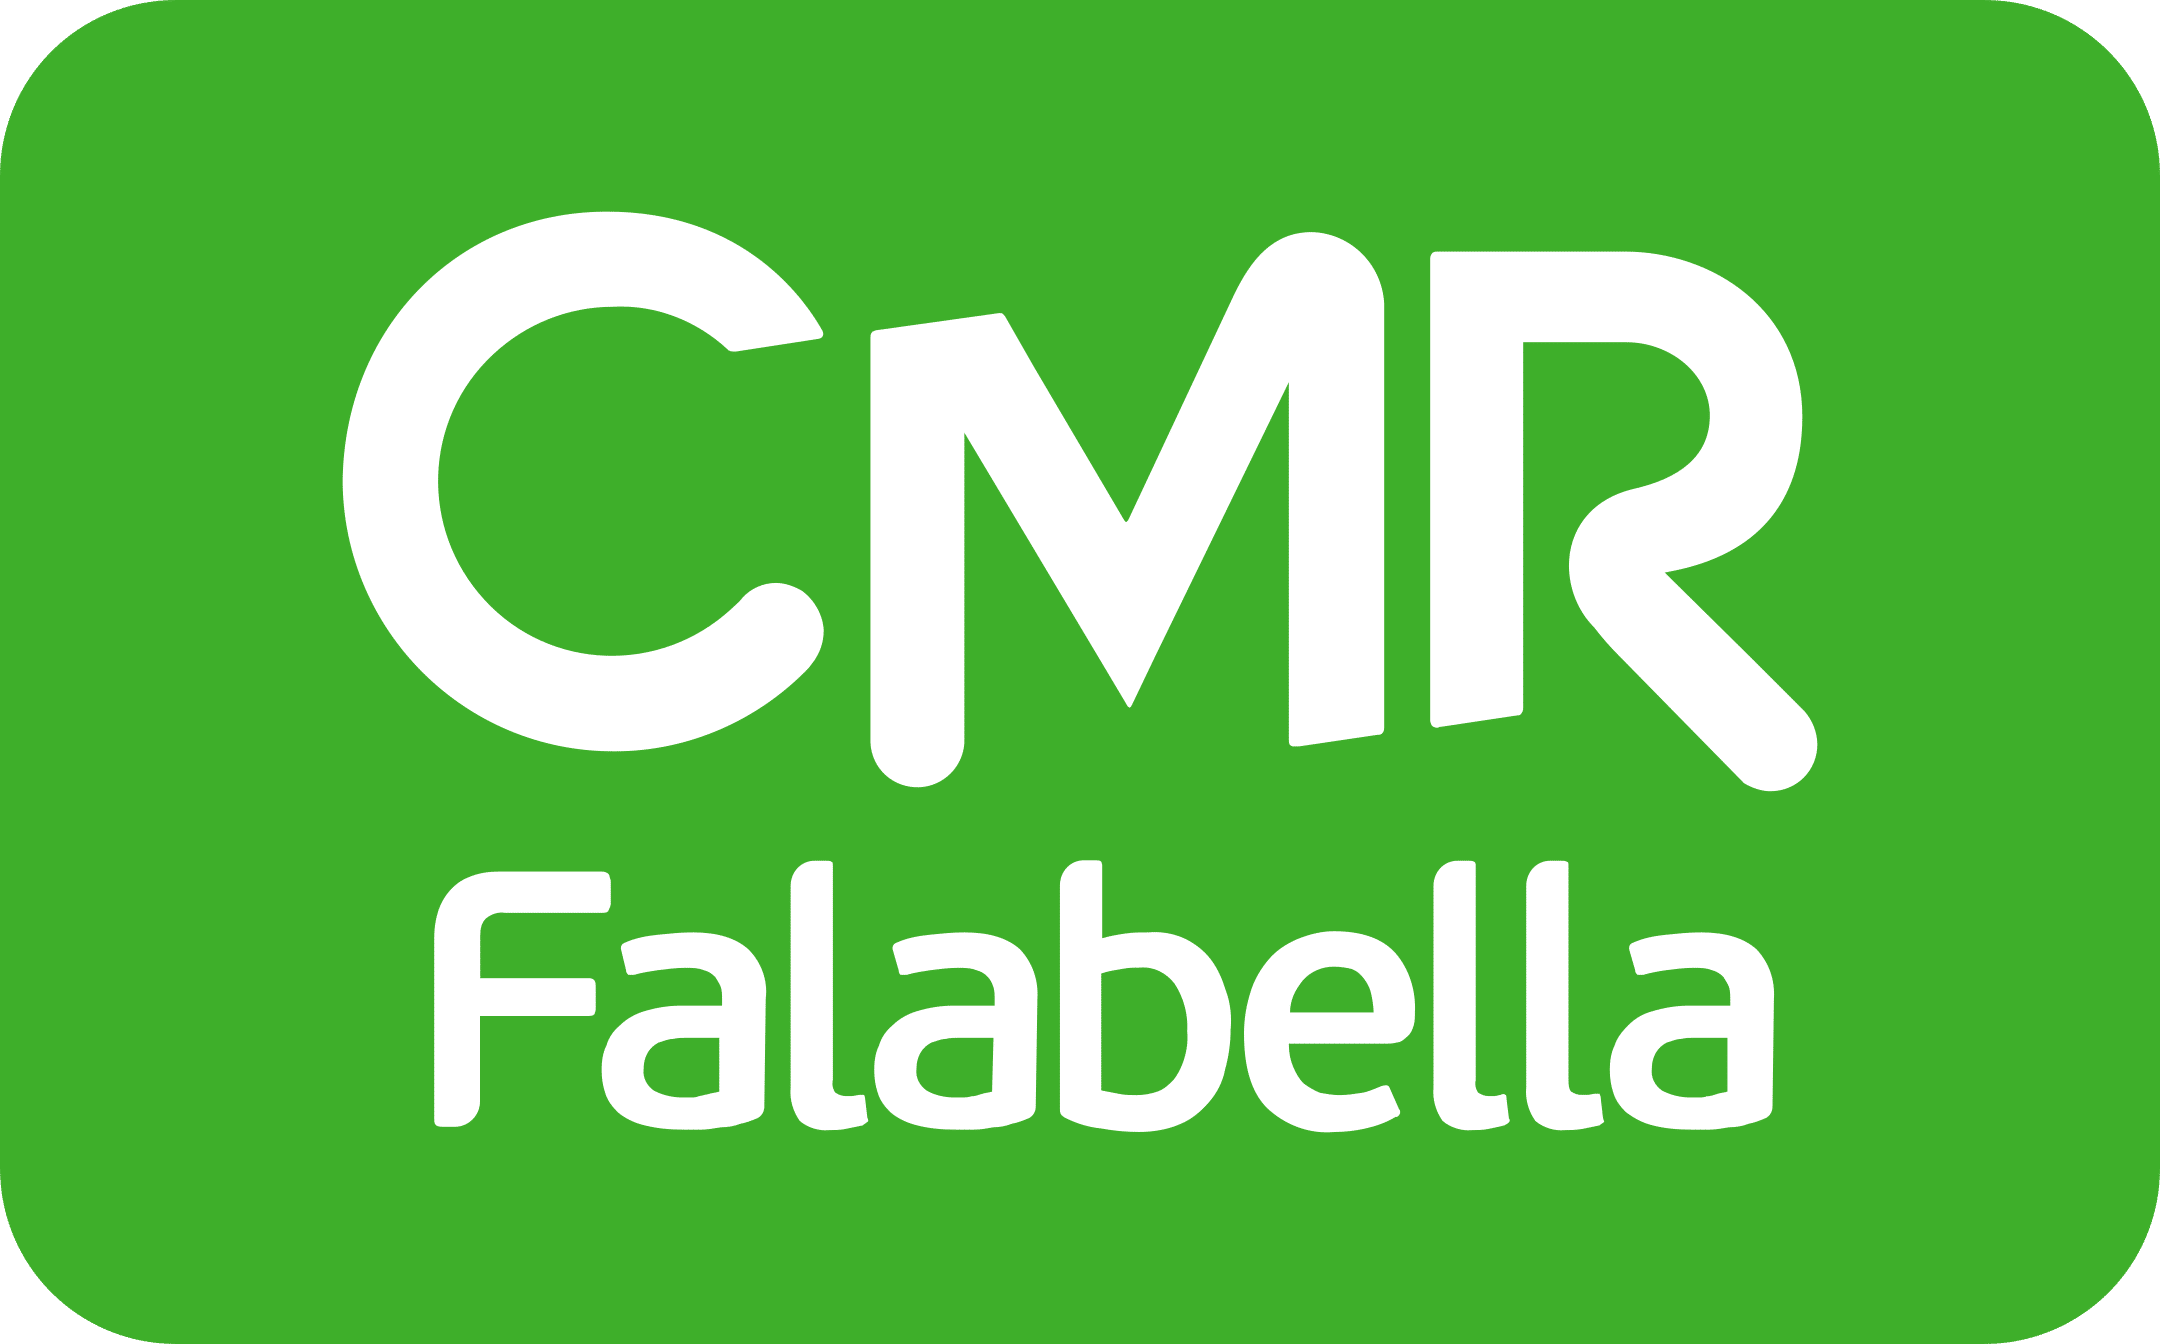 cmr falabella argentina